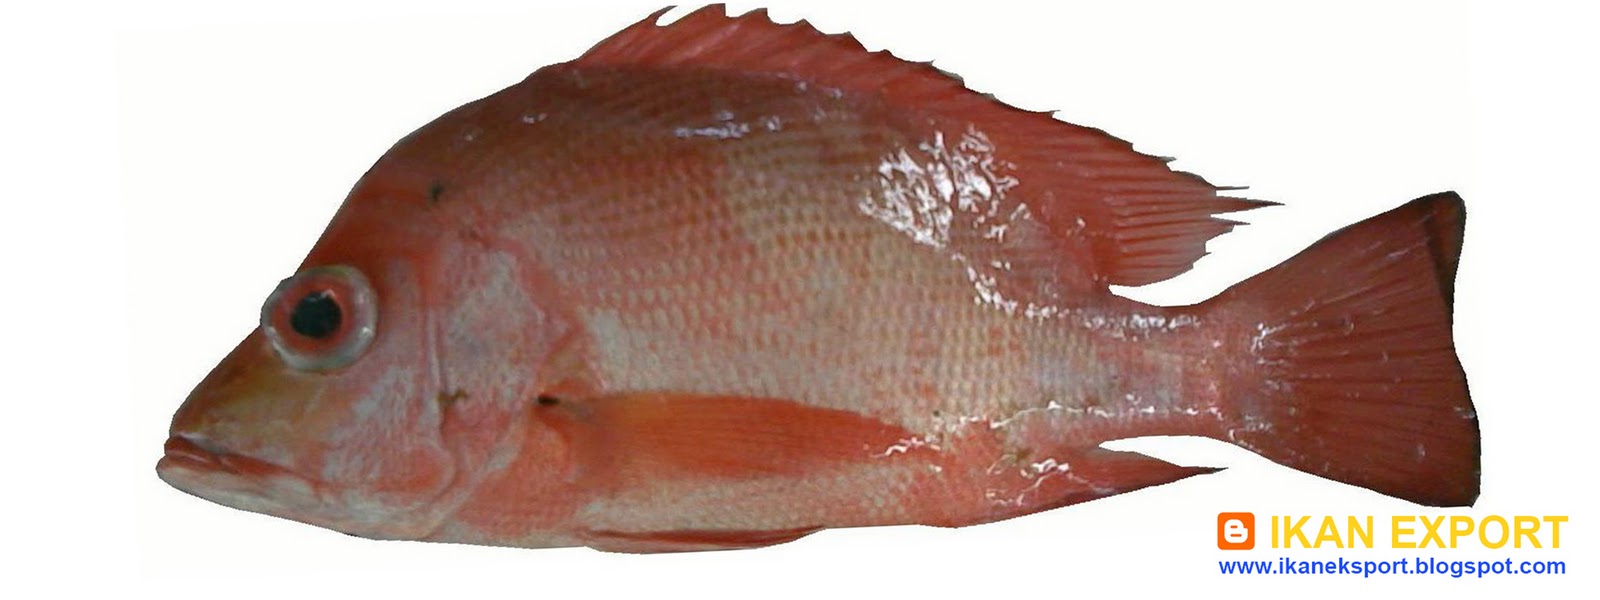  Ikan  Eksport Kakap  Merah